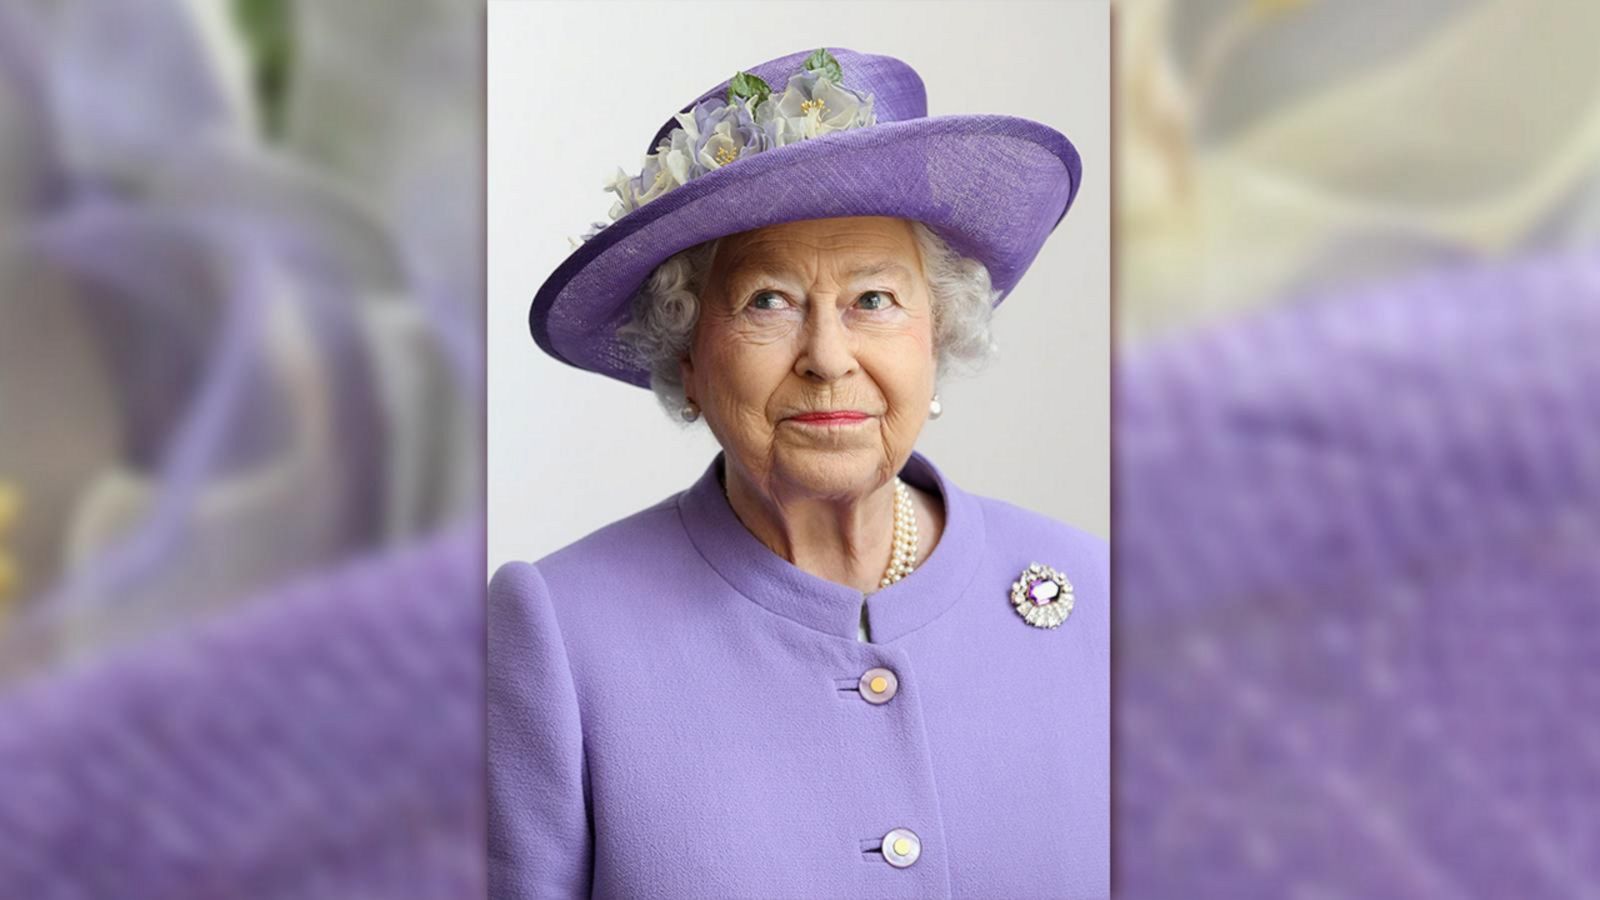 VIDEO: Queen Elizabeth turns 94